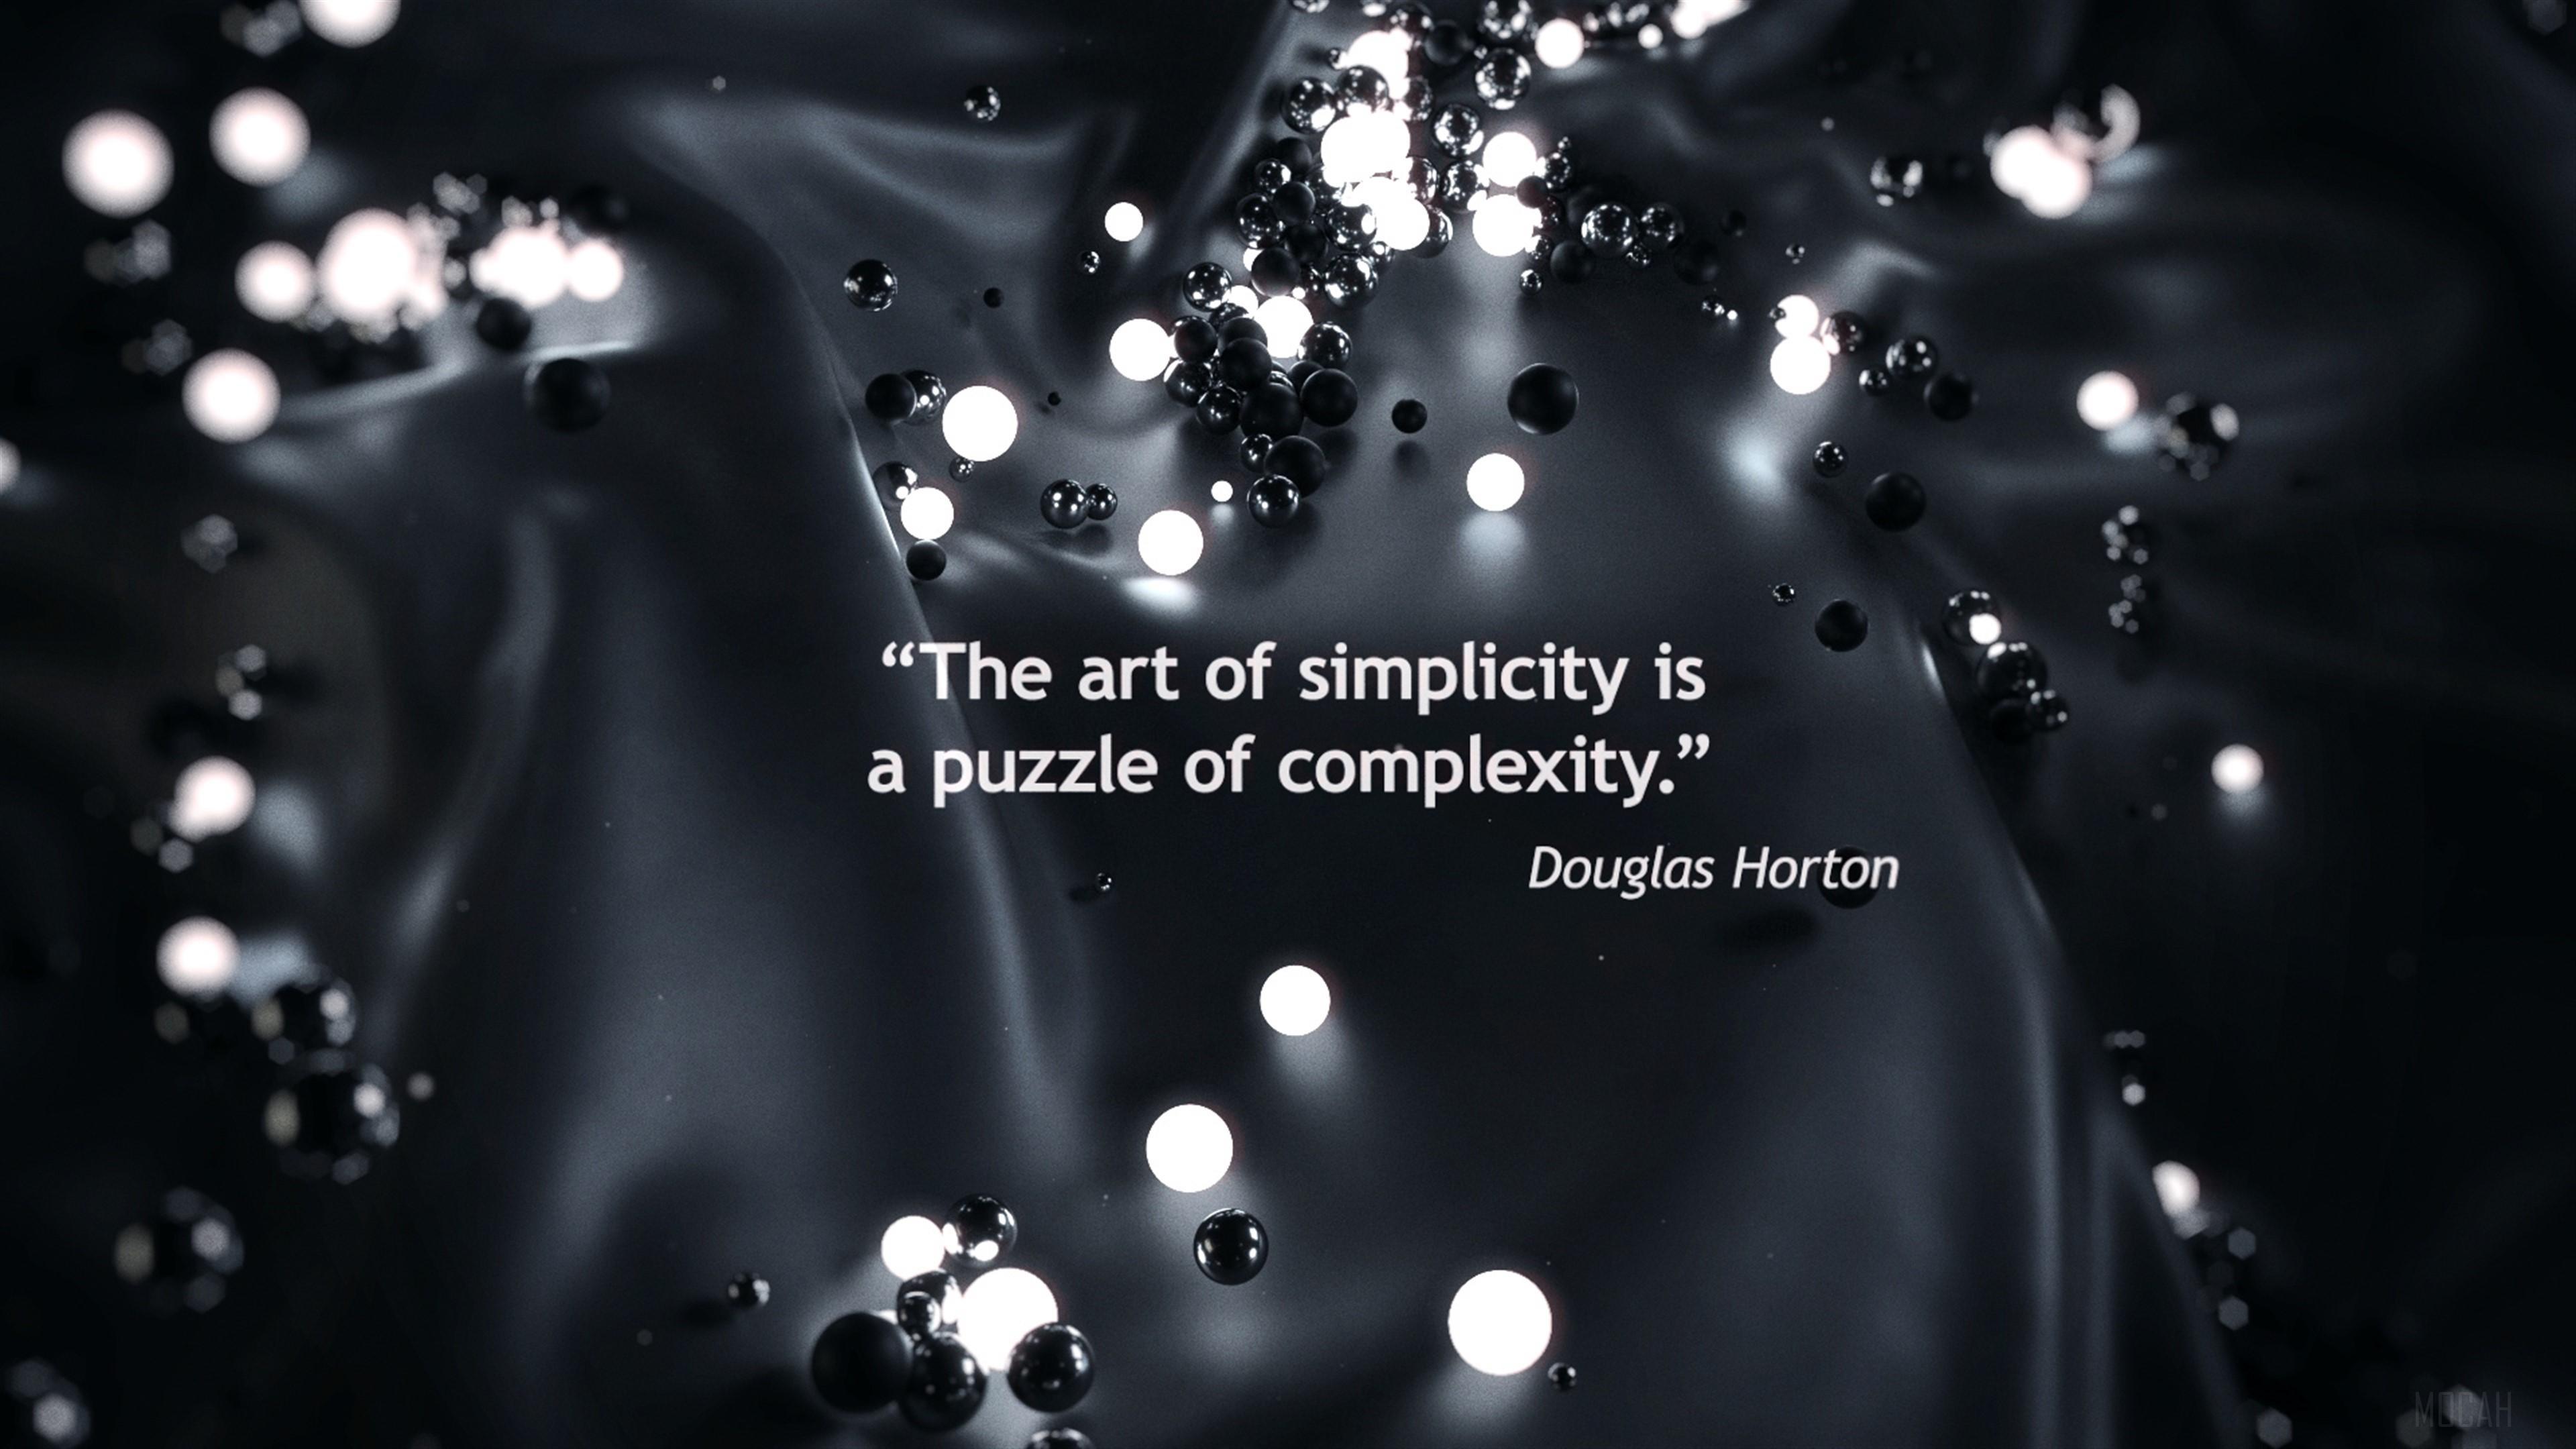 HD wallpaper, Art Of Simplicity Quotes 4K